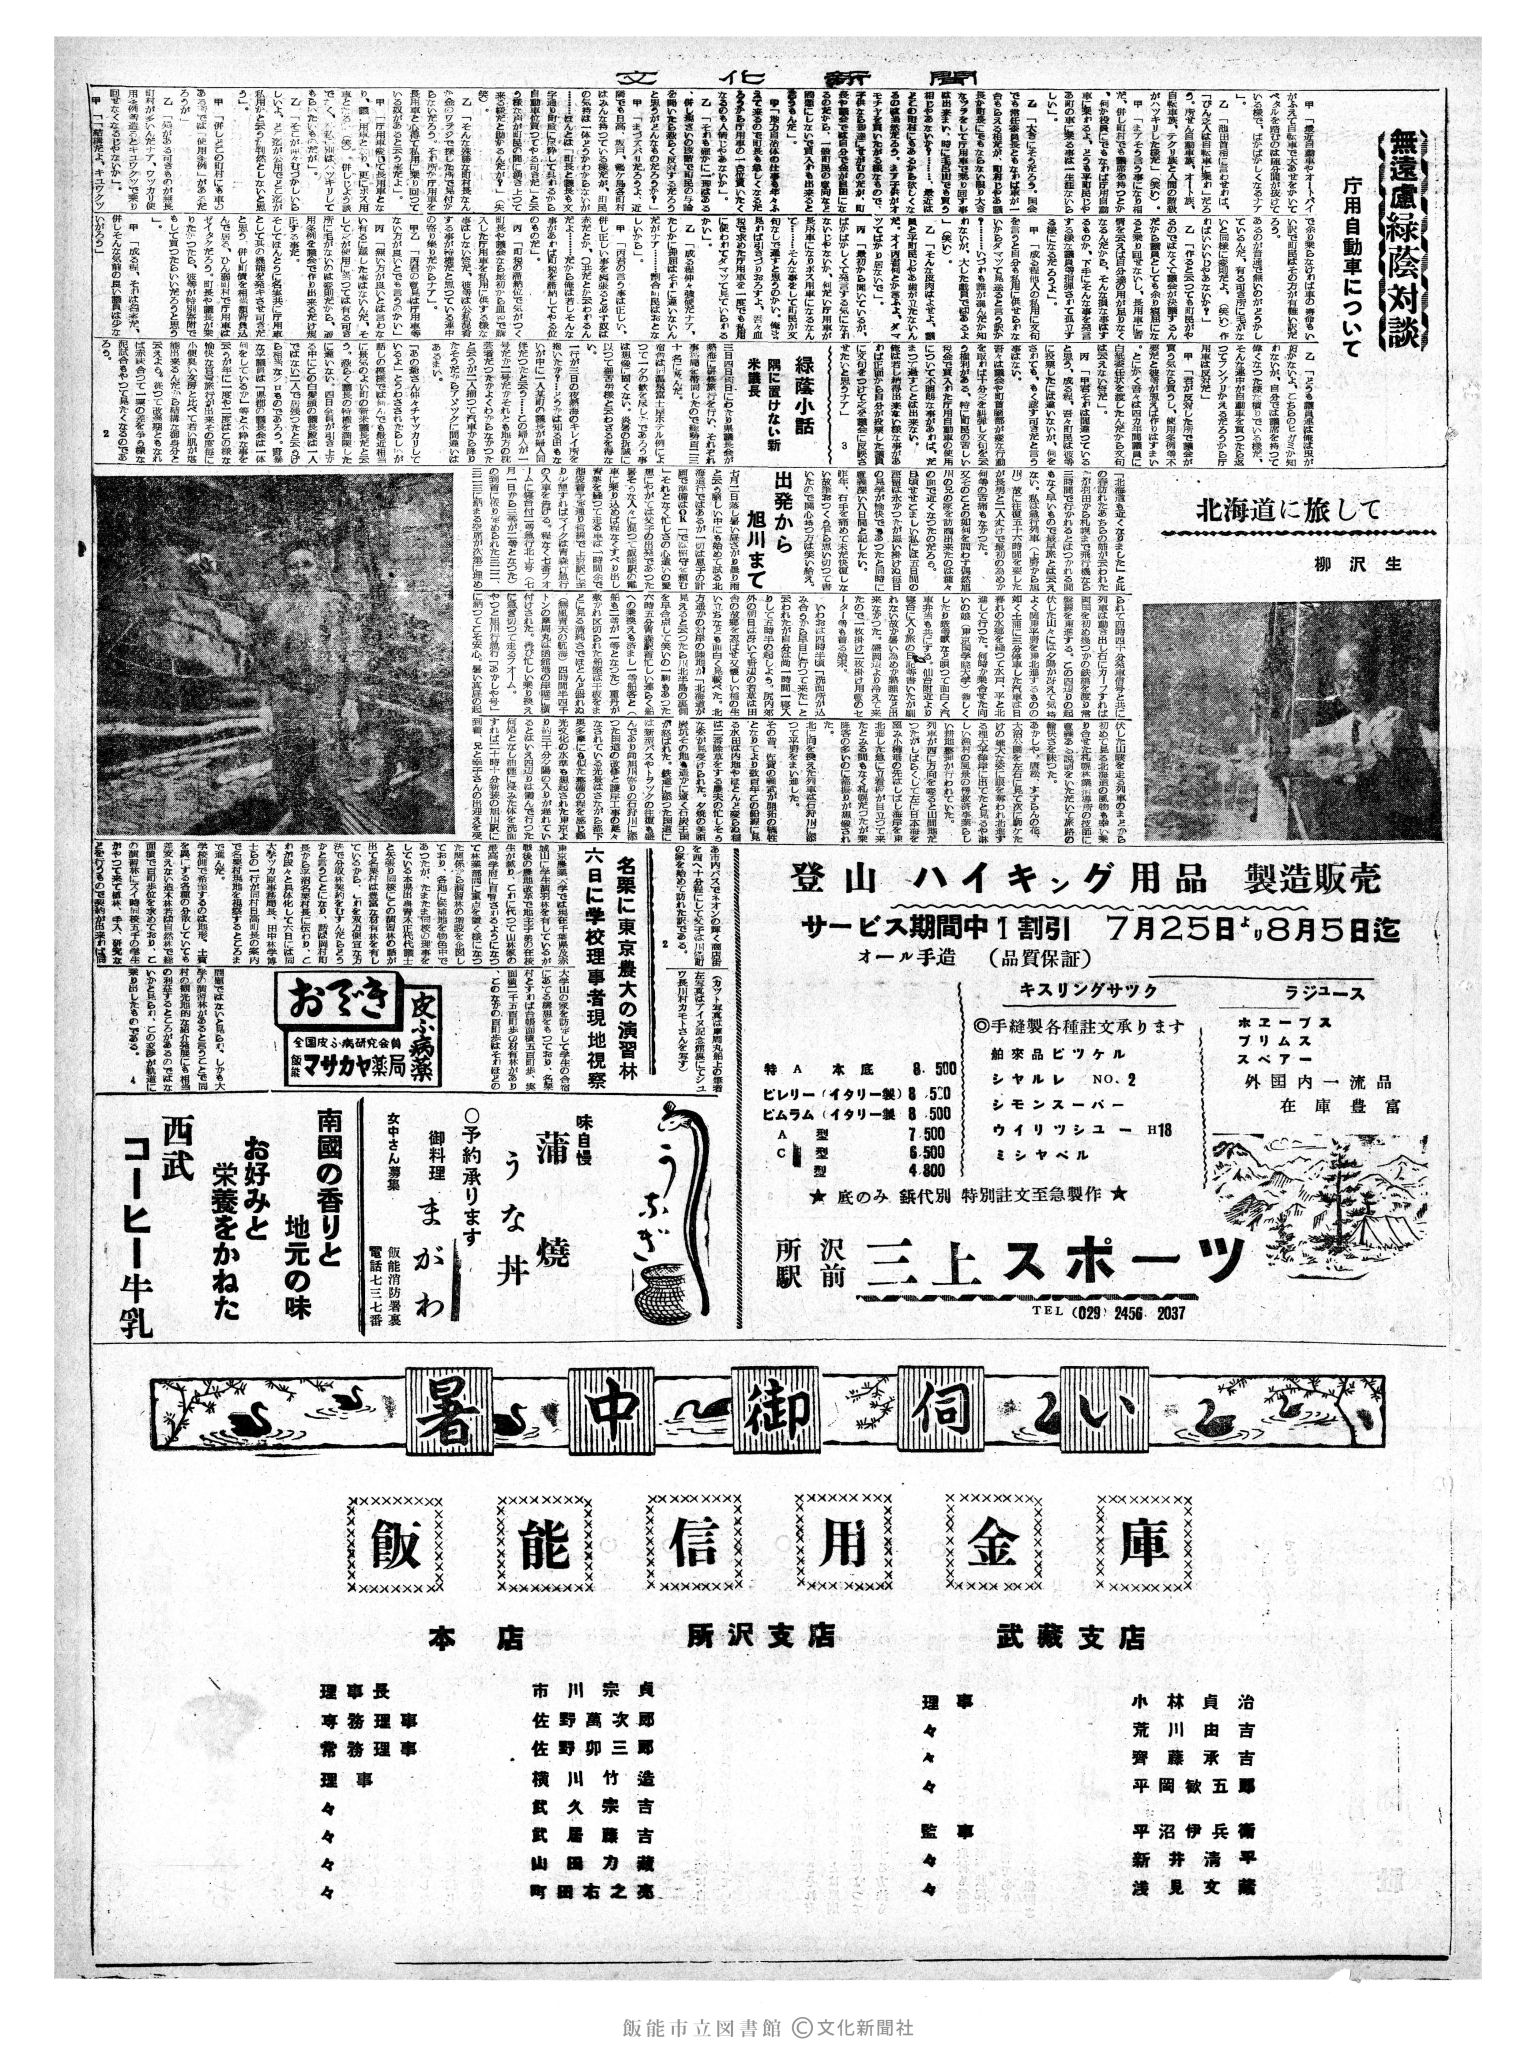 昭和35年8月7日3面 (第3603号) 2ページと同じ内容が印刷されています